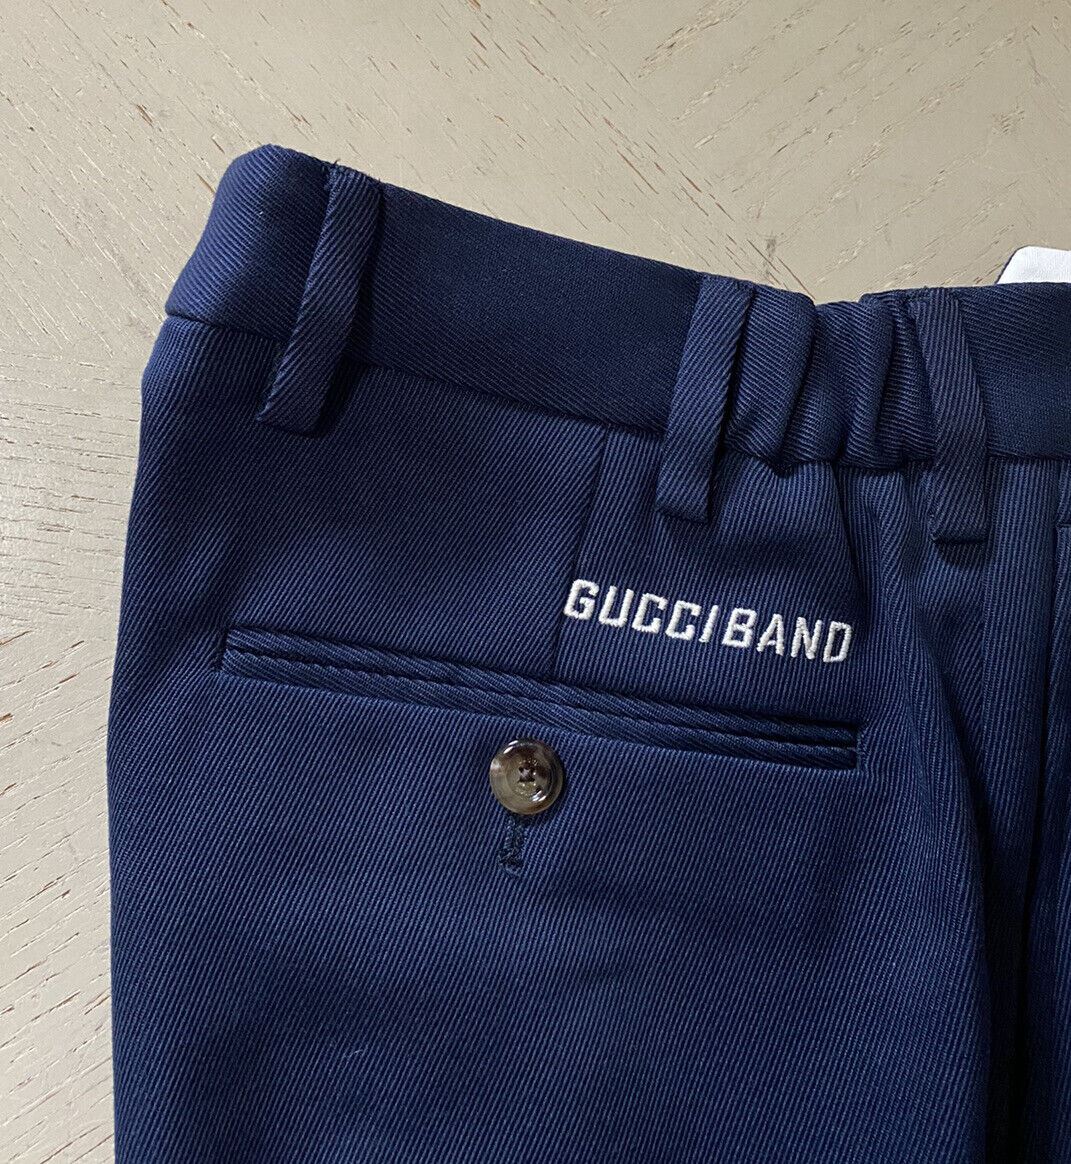 СЗТ $1100 Gucci Мужские брюки Gucci Band Синий/Каспийский 30 США (46 ЕС) Италия